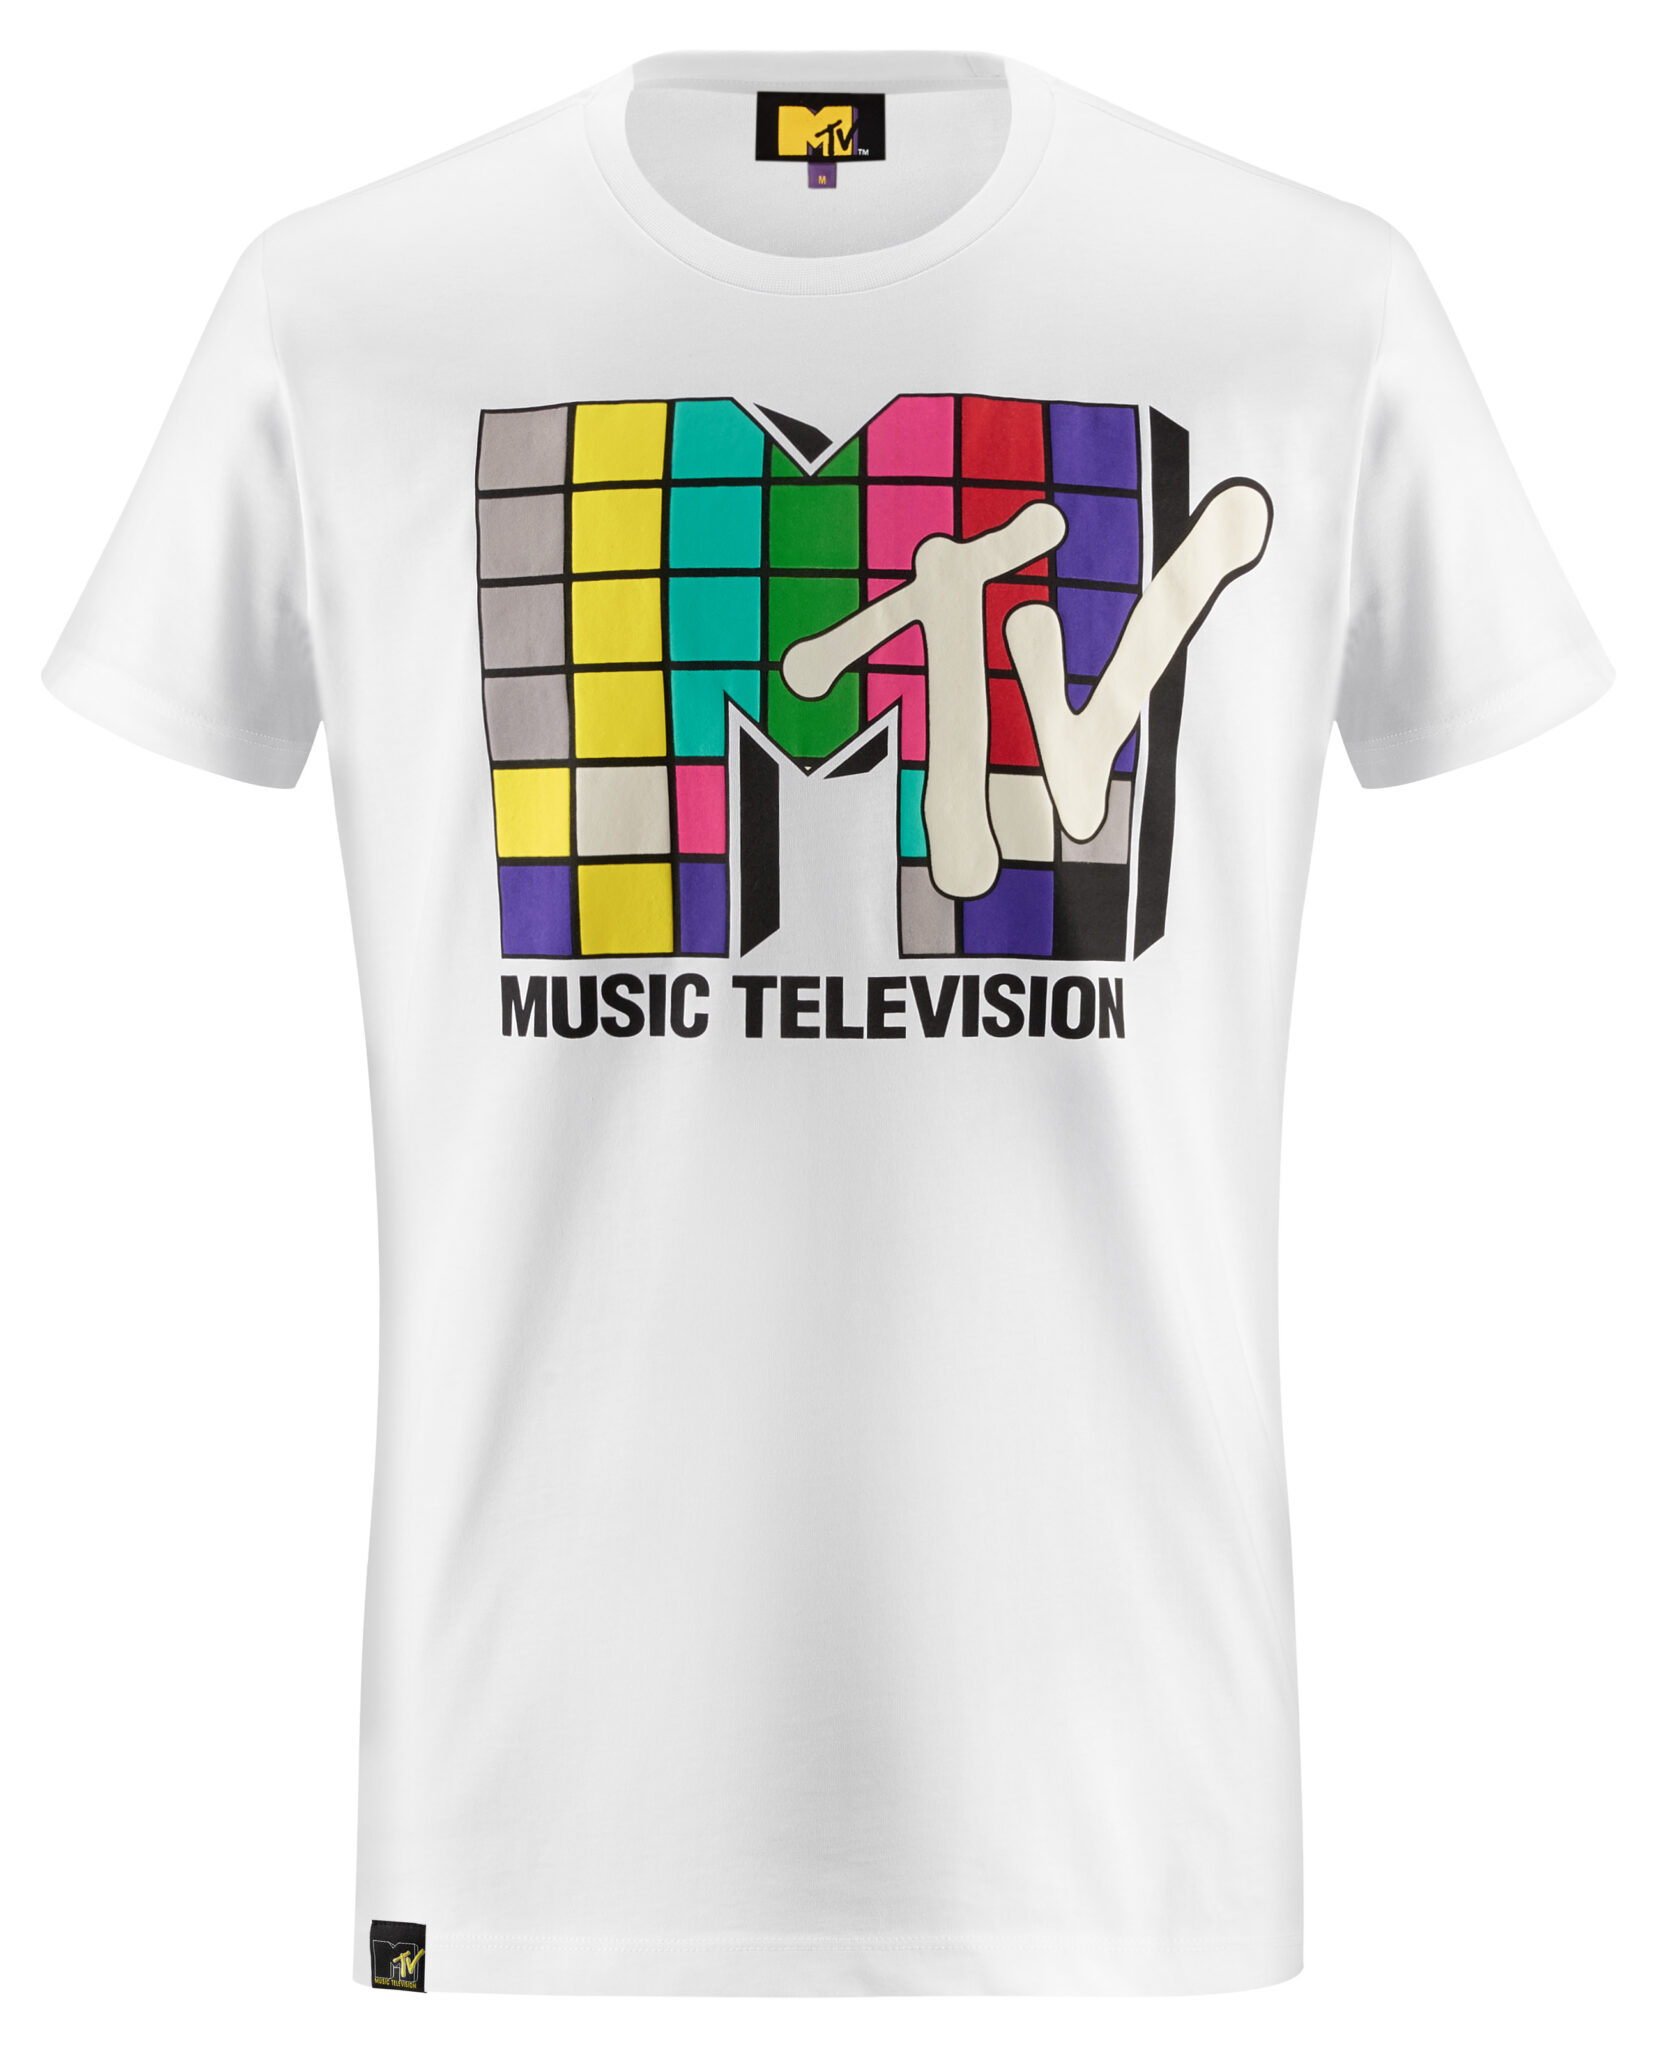 AW LAB e MTV